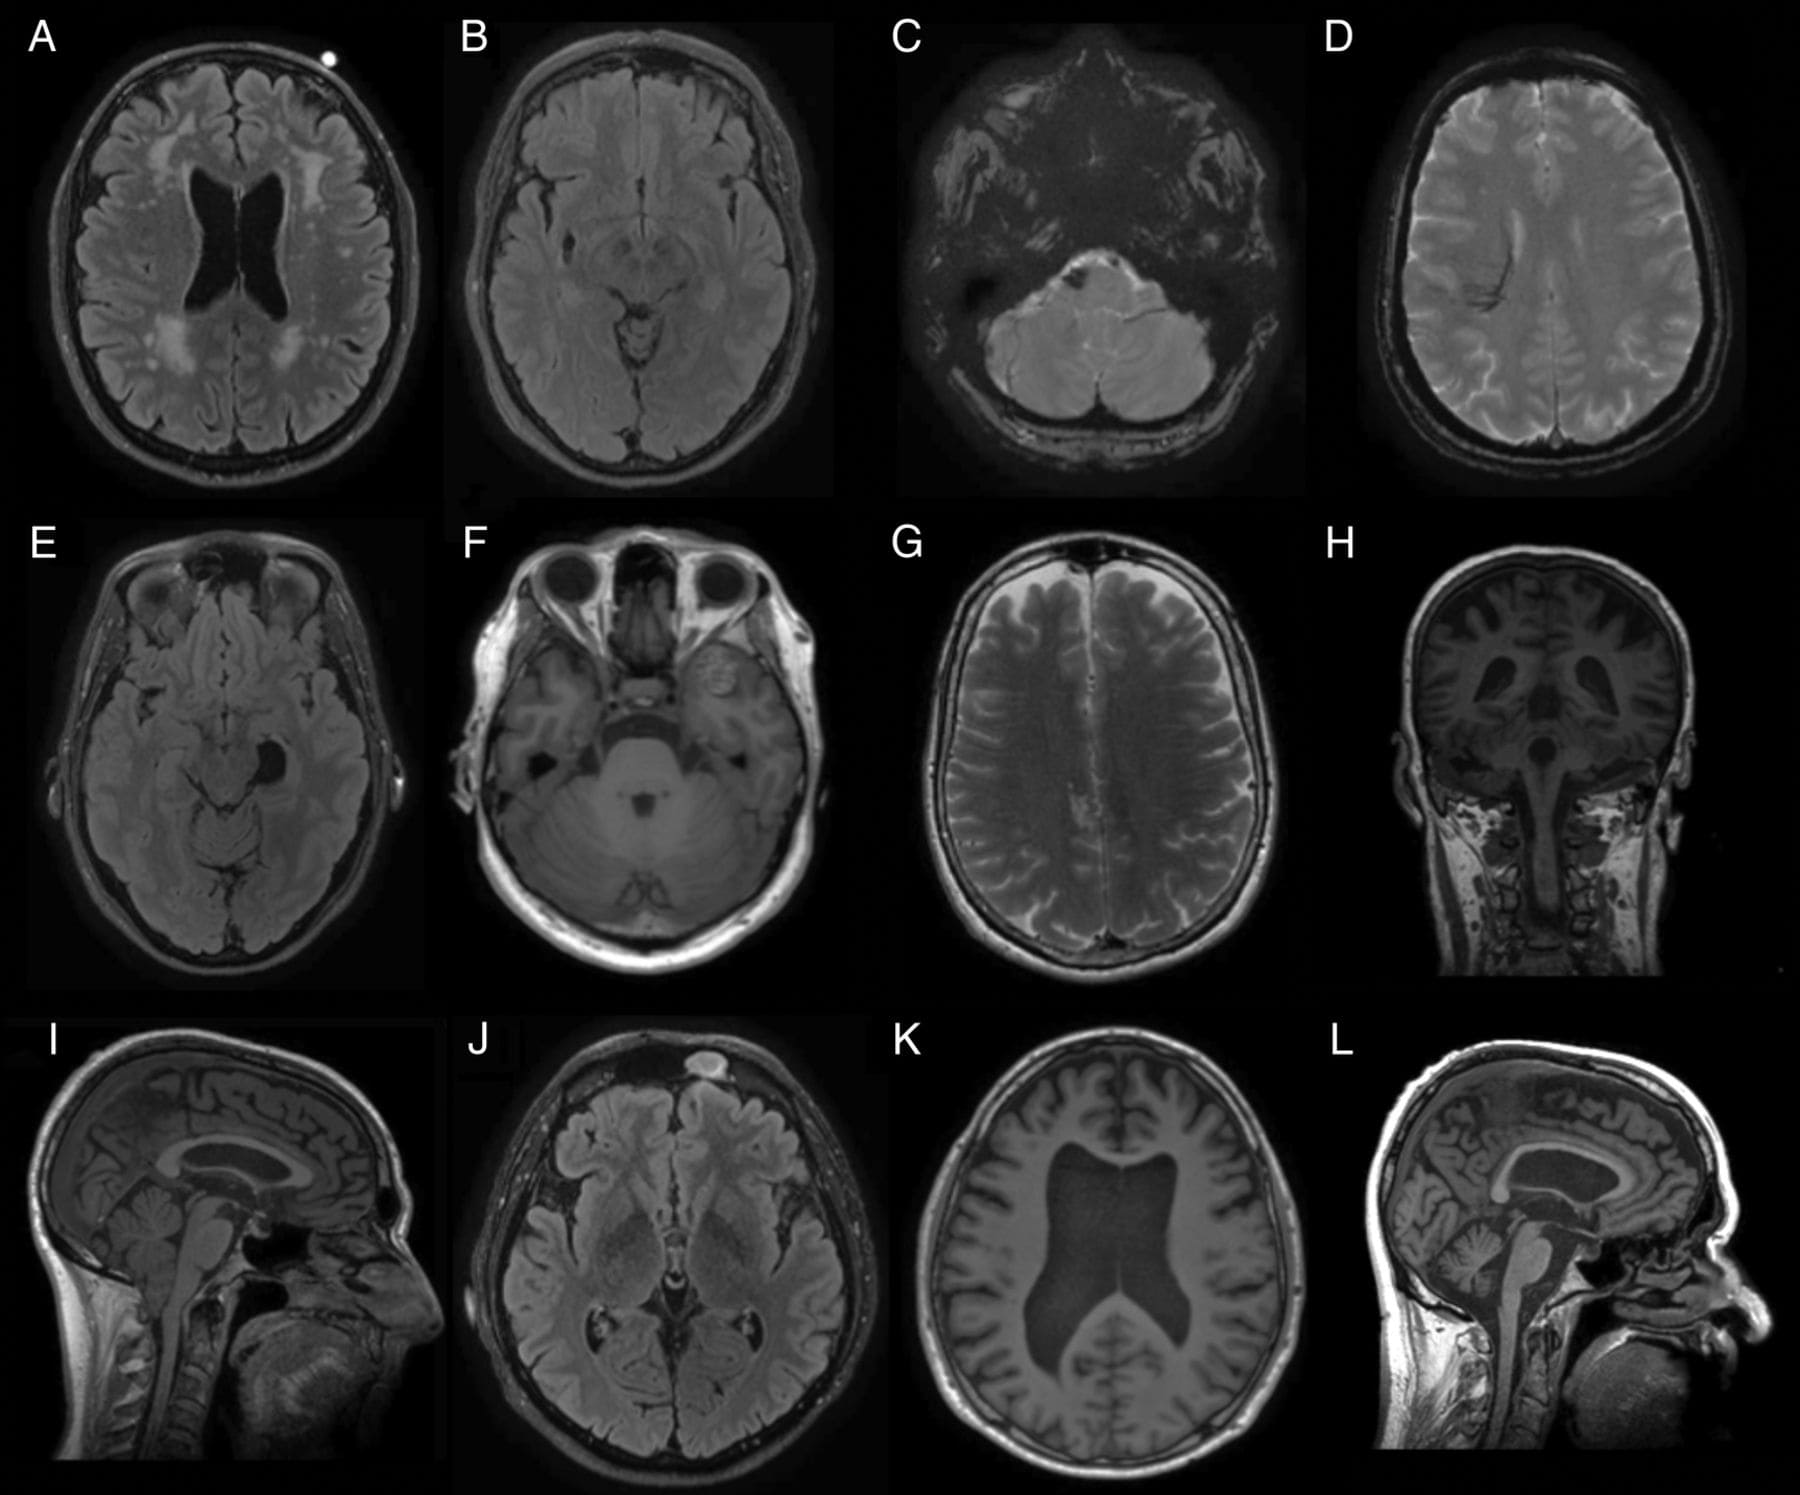 Мрт головного мозга в центре. Кт томограмма головного мозга. Компьютерная томография кт головного мозга. Рентгеновская компьютерная томография головного мозга. Магнито-резонансная томография головного мозга.